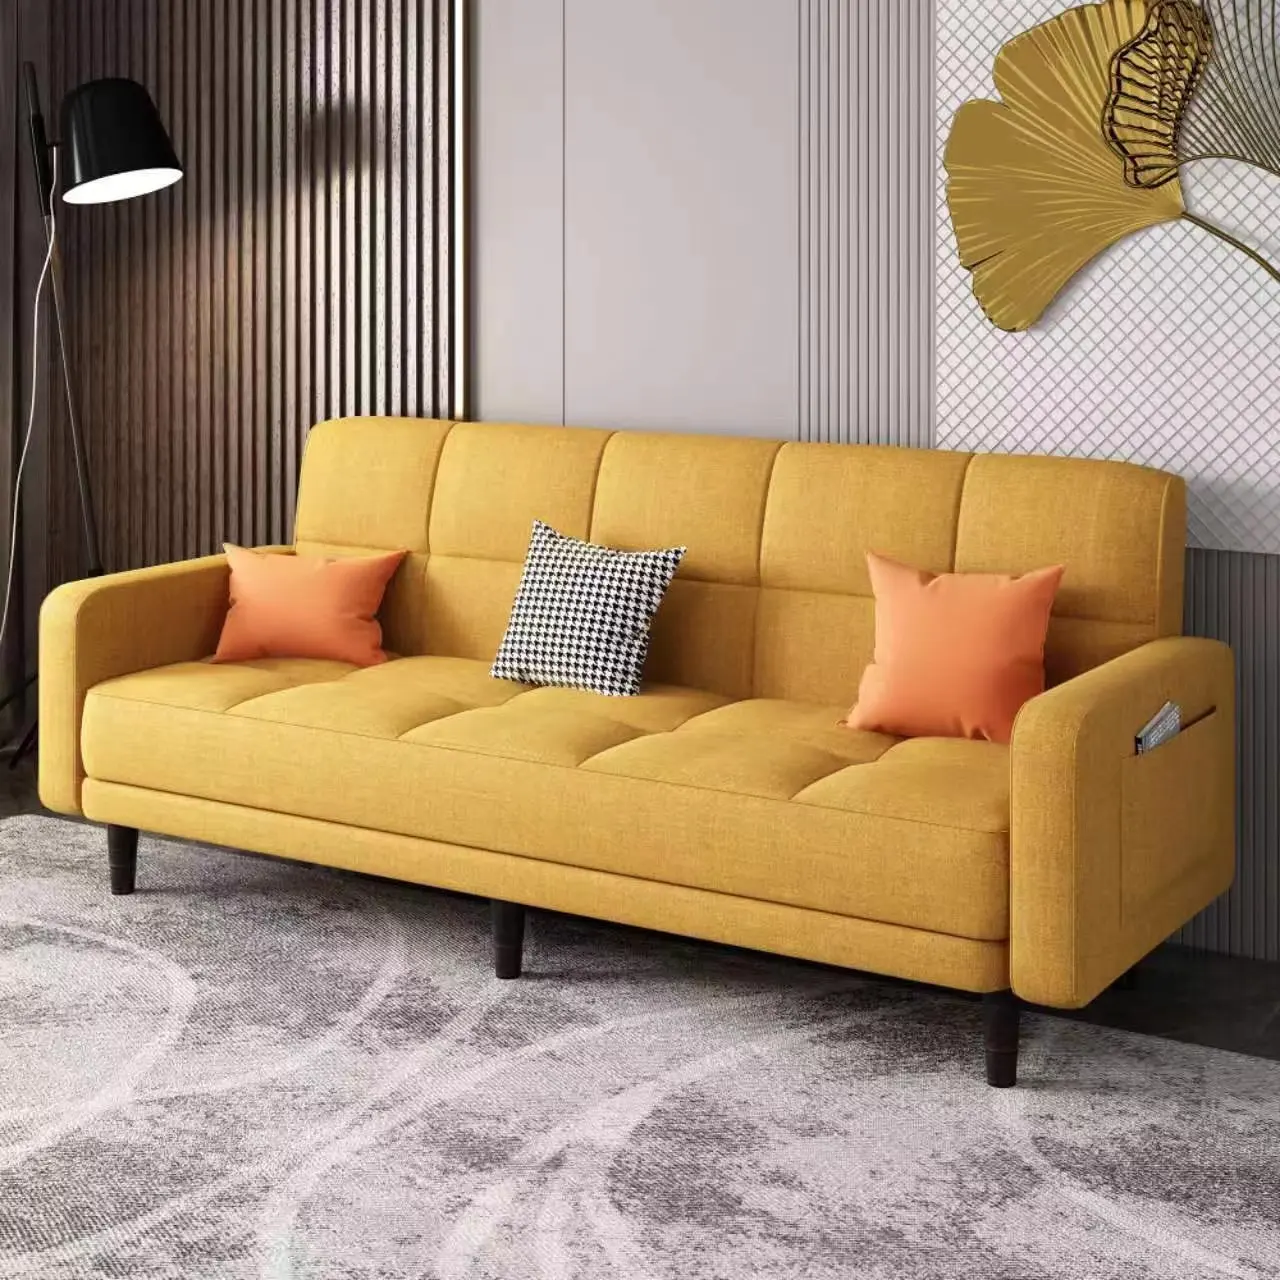 Kelly Lounge Fancy set da soggiorno componibile divano posto in tessuto moderno a basso prezzo divano lungo mobili per la casa